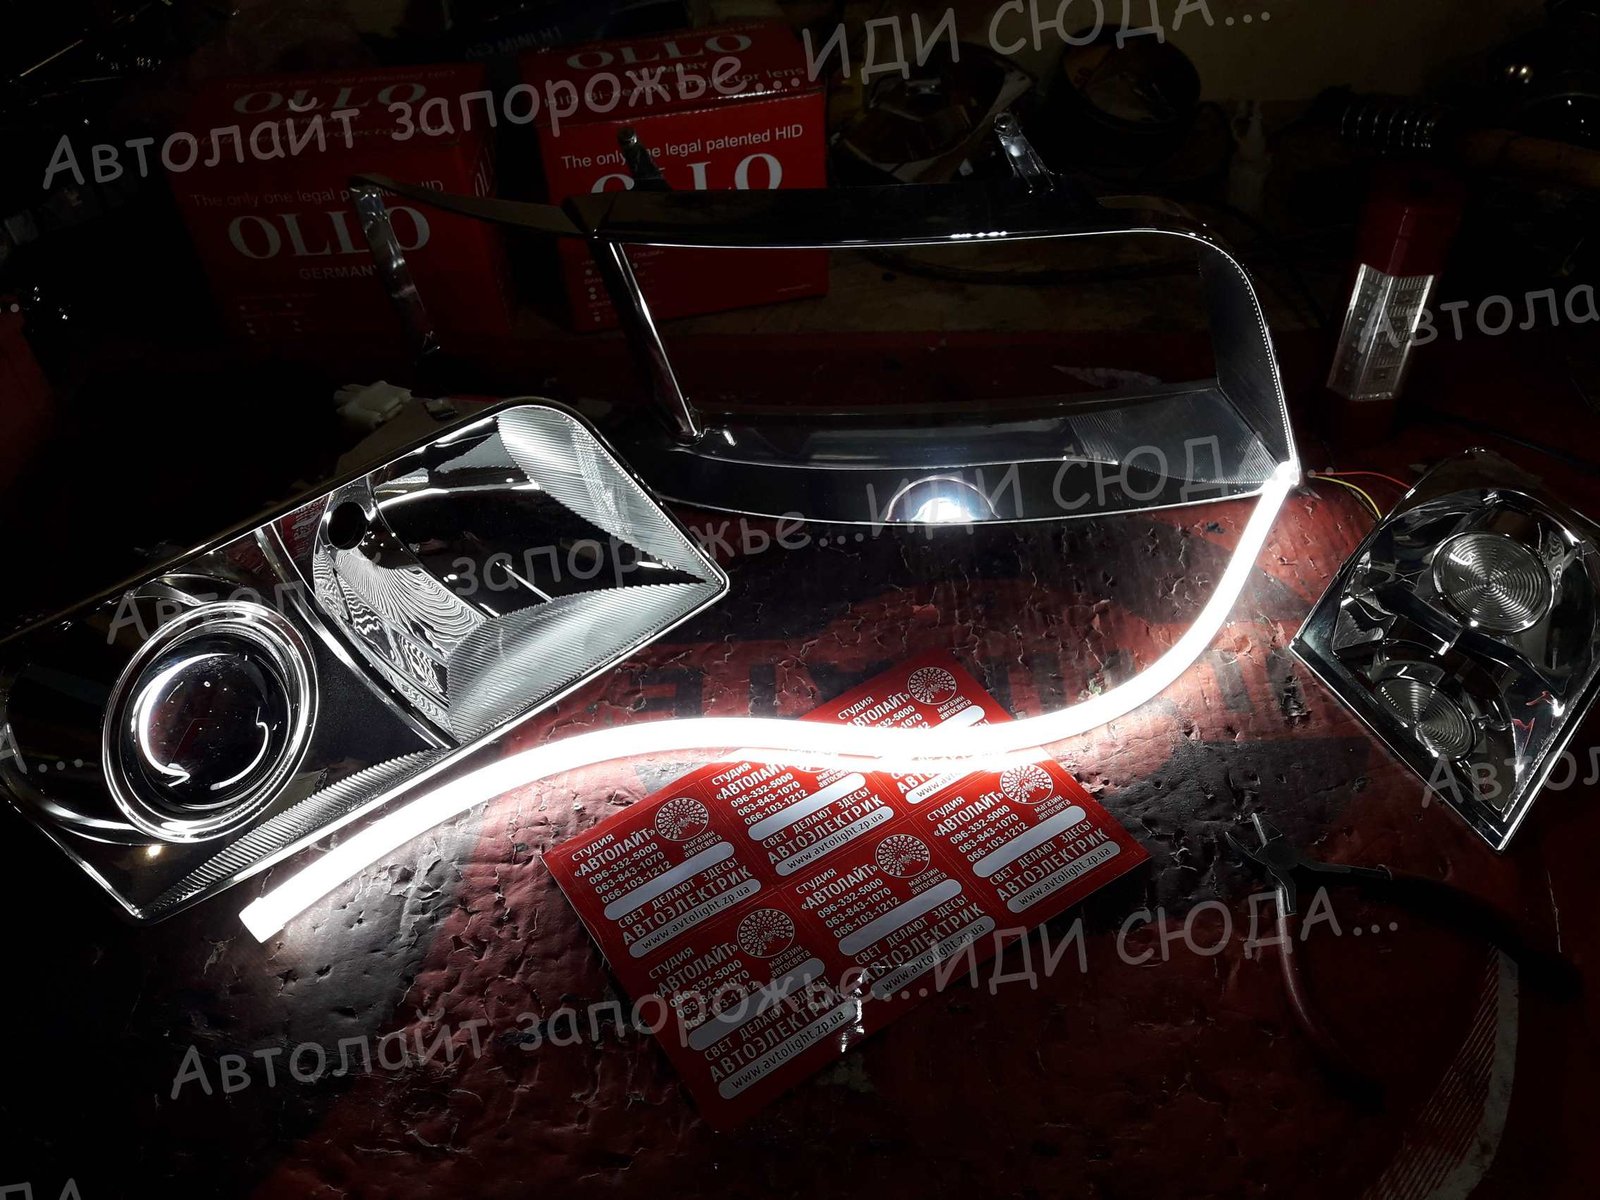 Фотогалерея автосвет 25 🚗ⒶⓋⓉⓄⓁⒾⒼⓗⓉ🚗 студия "Автолайт" Качественный автосвет в Запорожье